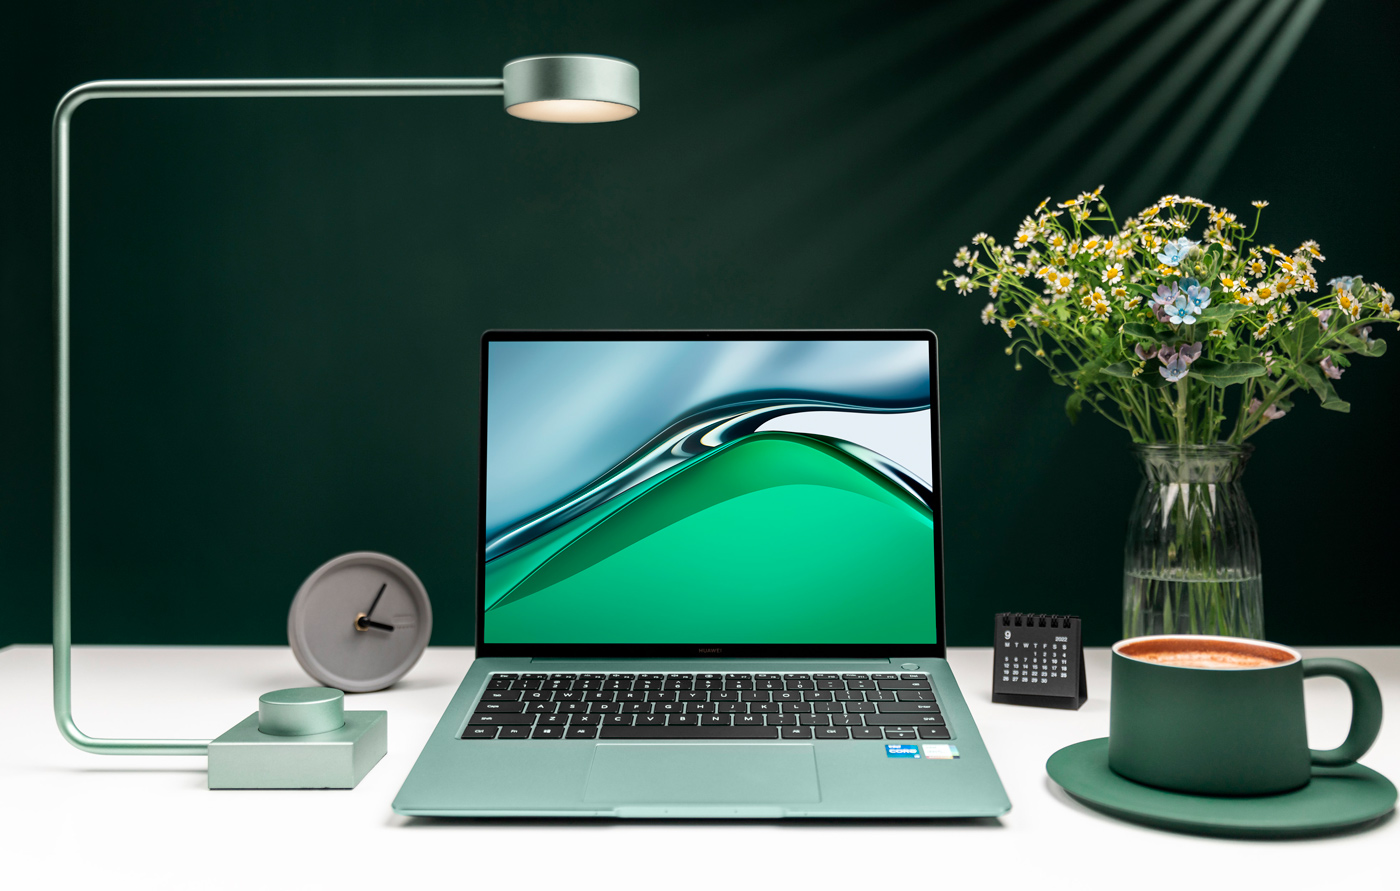 Ноутбук Huawei MateBook 14s стал доступен в Украине в новом зеленом цвете